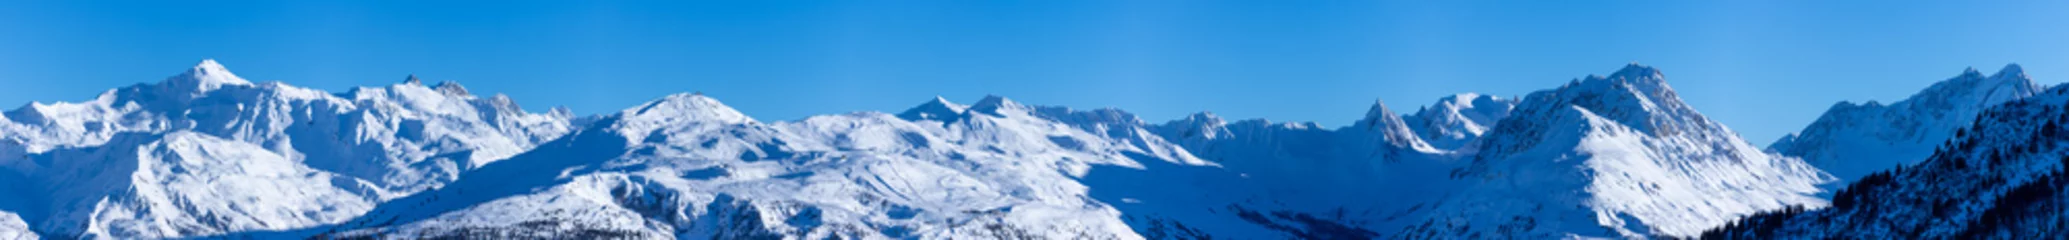 Foto op geborsteld aluminium Alpen vue ultra panoramique sur une chaîne de montagnes enneigées des alpes